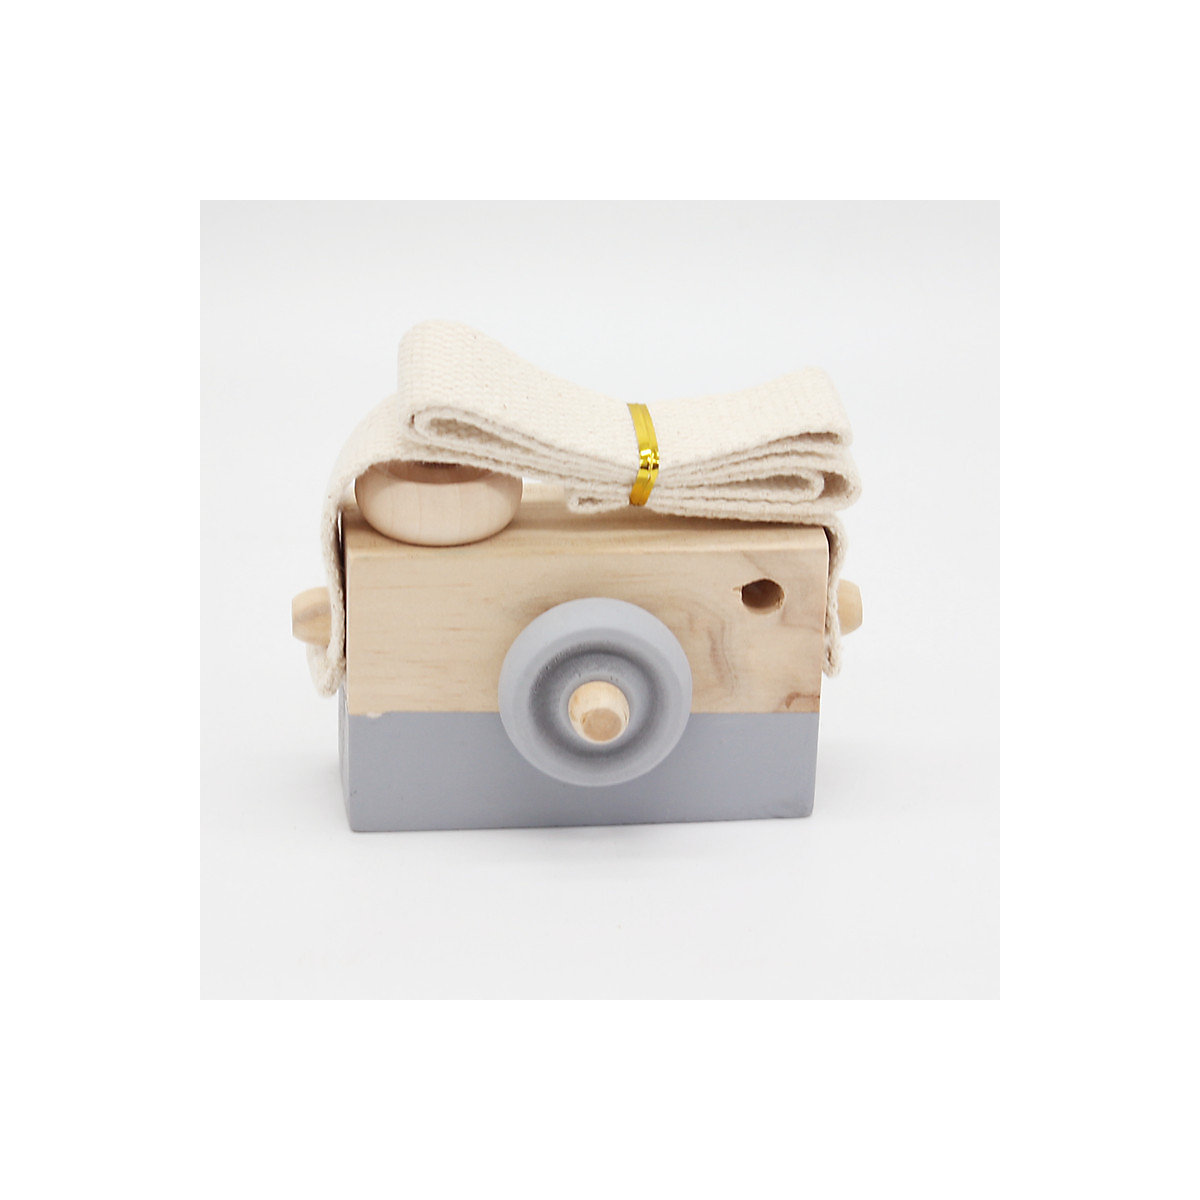 Syntek Hölzernes Simulations-Kamera-Griff-Trainingsspielzeug für Kinder Kinder-Früherziehung pädagogisches Lernen aus Holz Kameraspielzeug